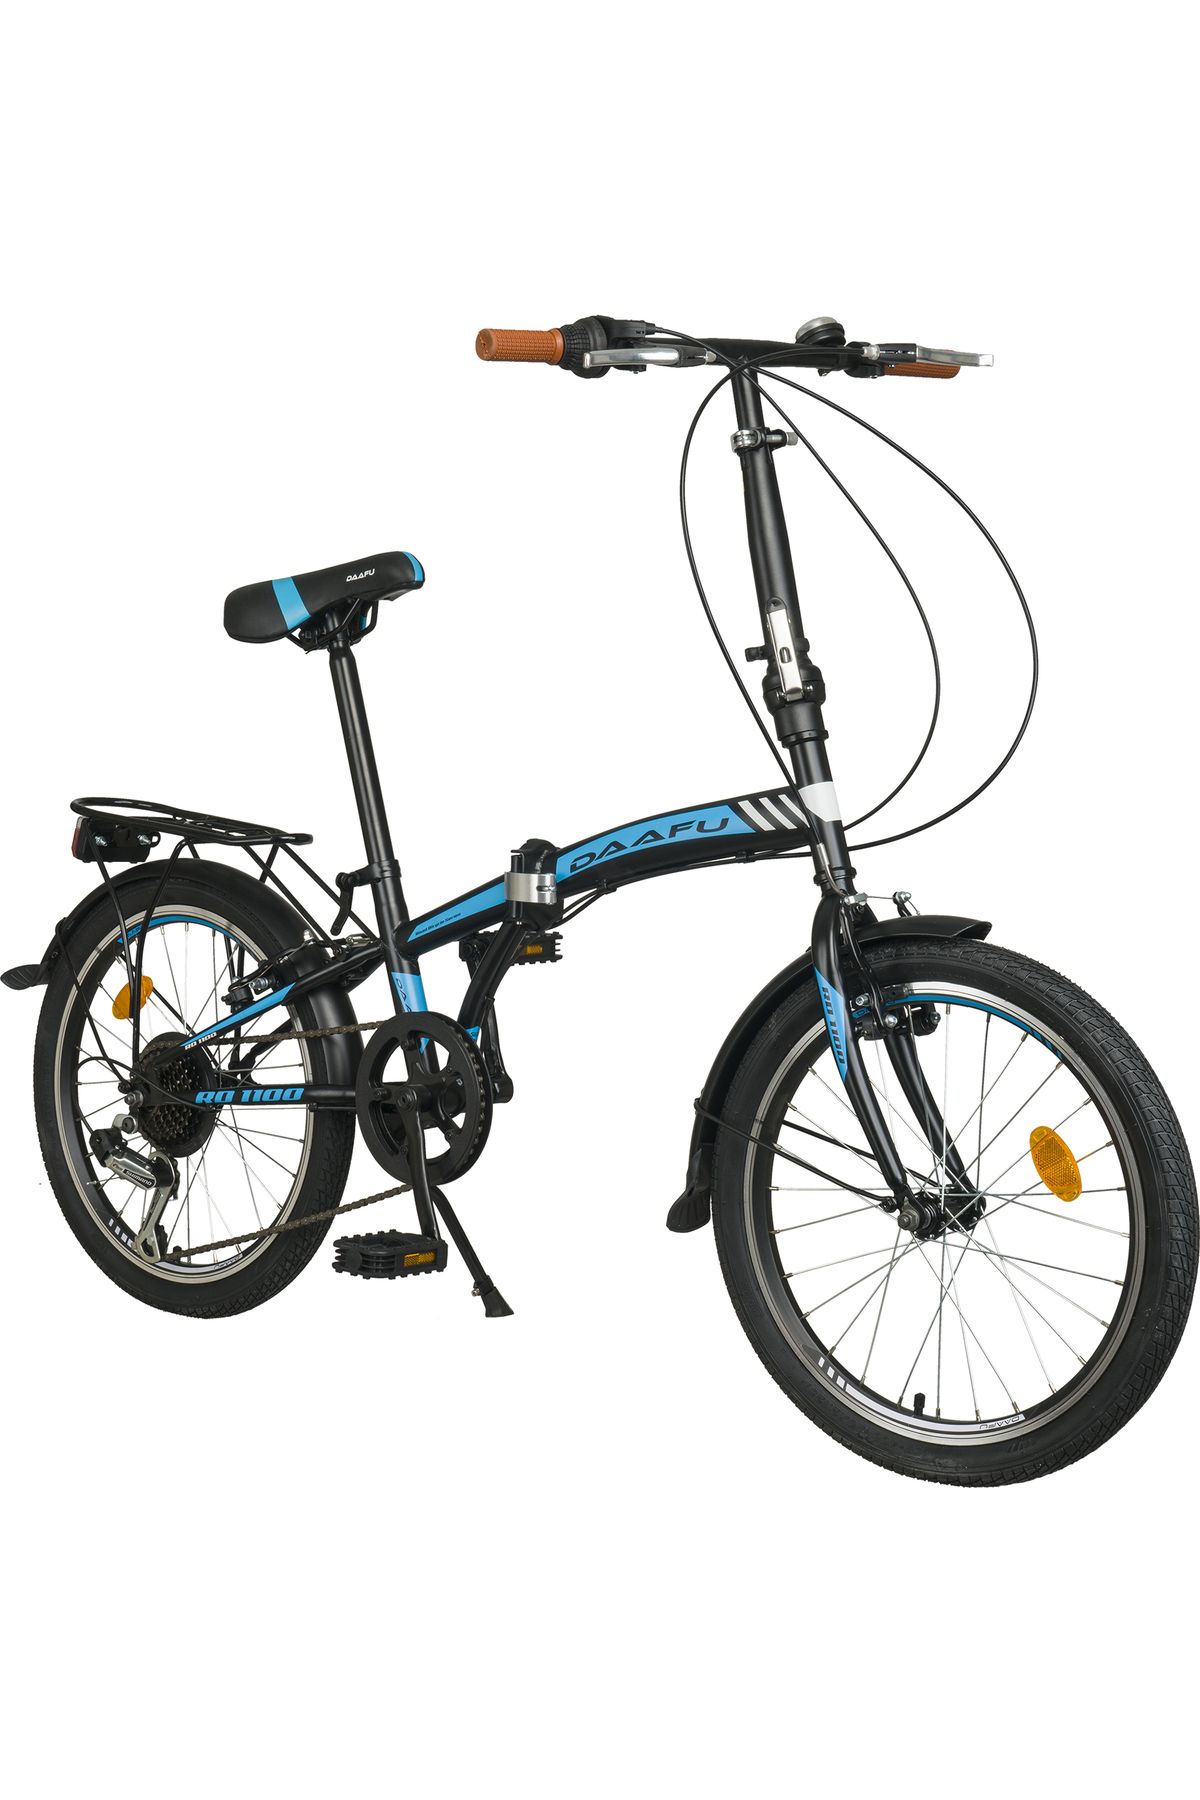 Kldoro Daafu Rd1100 Folding 20 Jant Bisiklet Katlanır Bisikleti